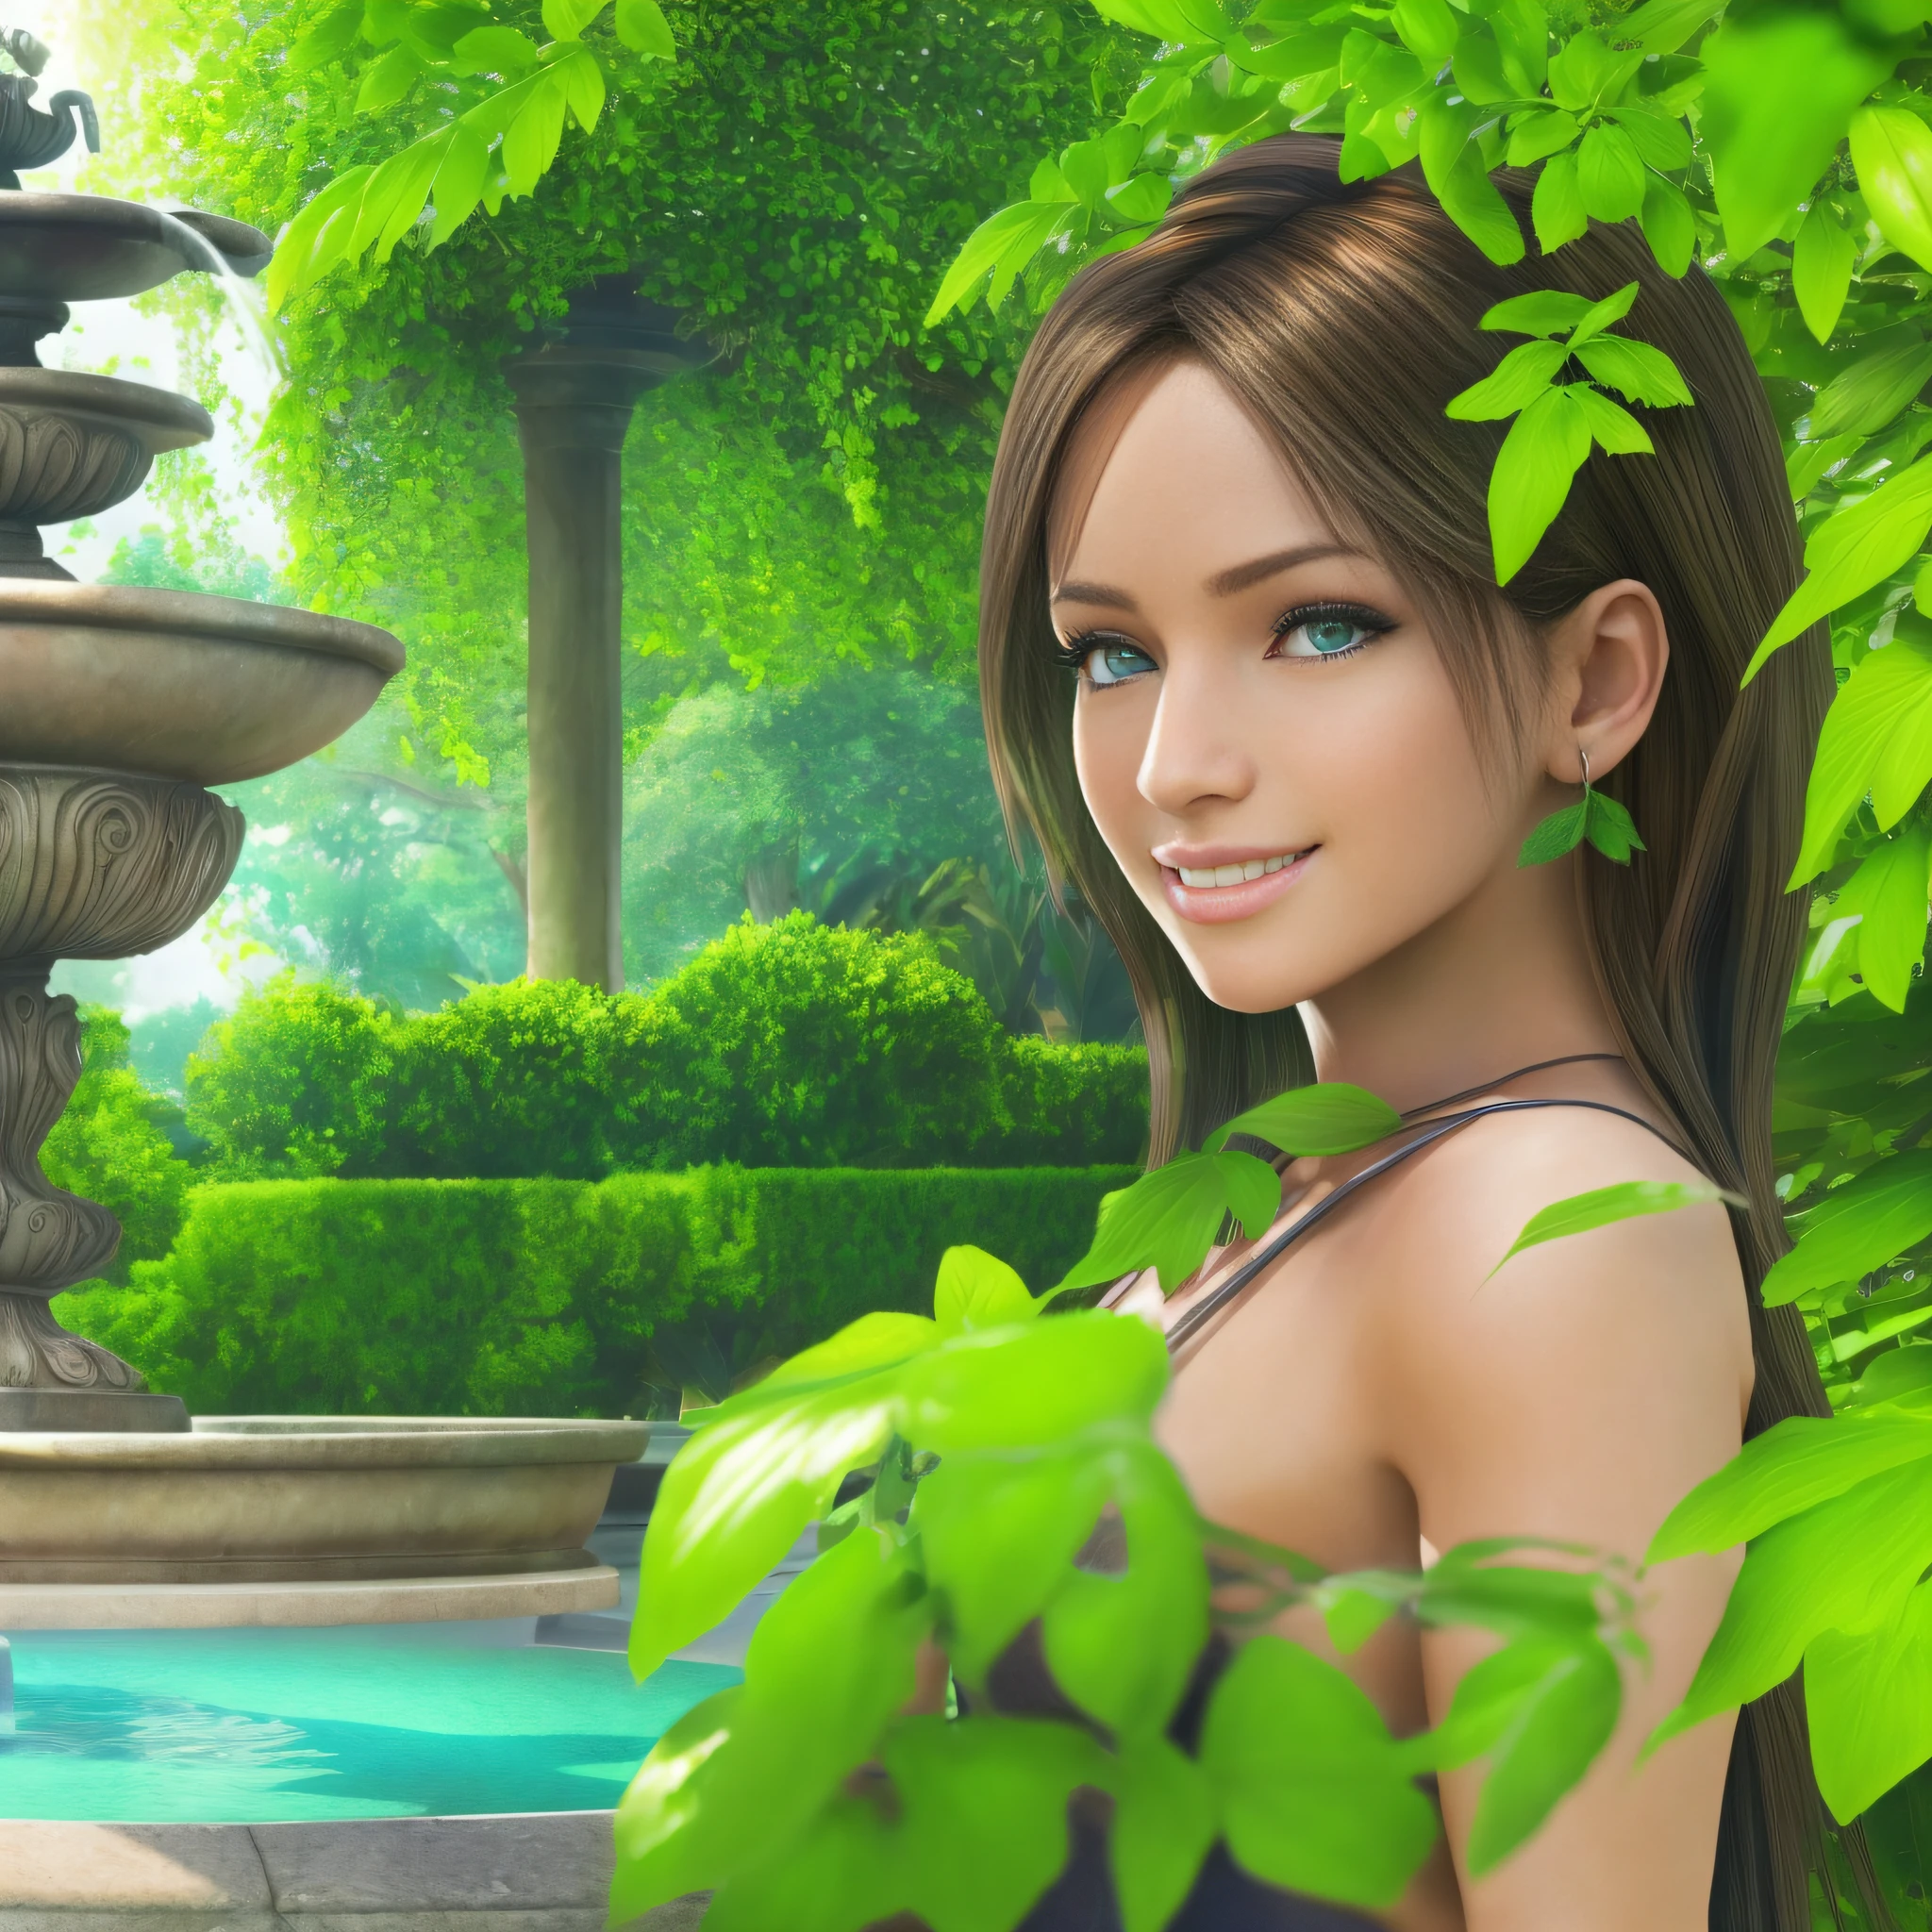 一位年轻女子在有喷泉的花园里, 白皙的皮肤, 细致的脸部, 完美的眼睛, 茂盛的绿色植被, 温和的天气, 灿烂的笑容, 正面照, (极其详细的 Unity 8k 壁纸, 最好的质量, 杰作)